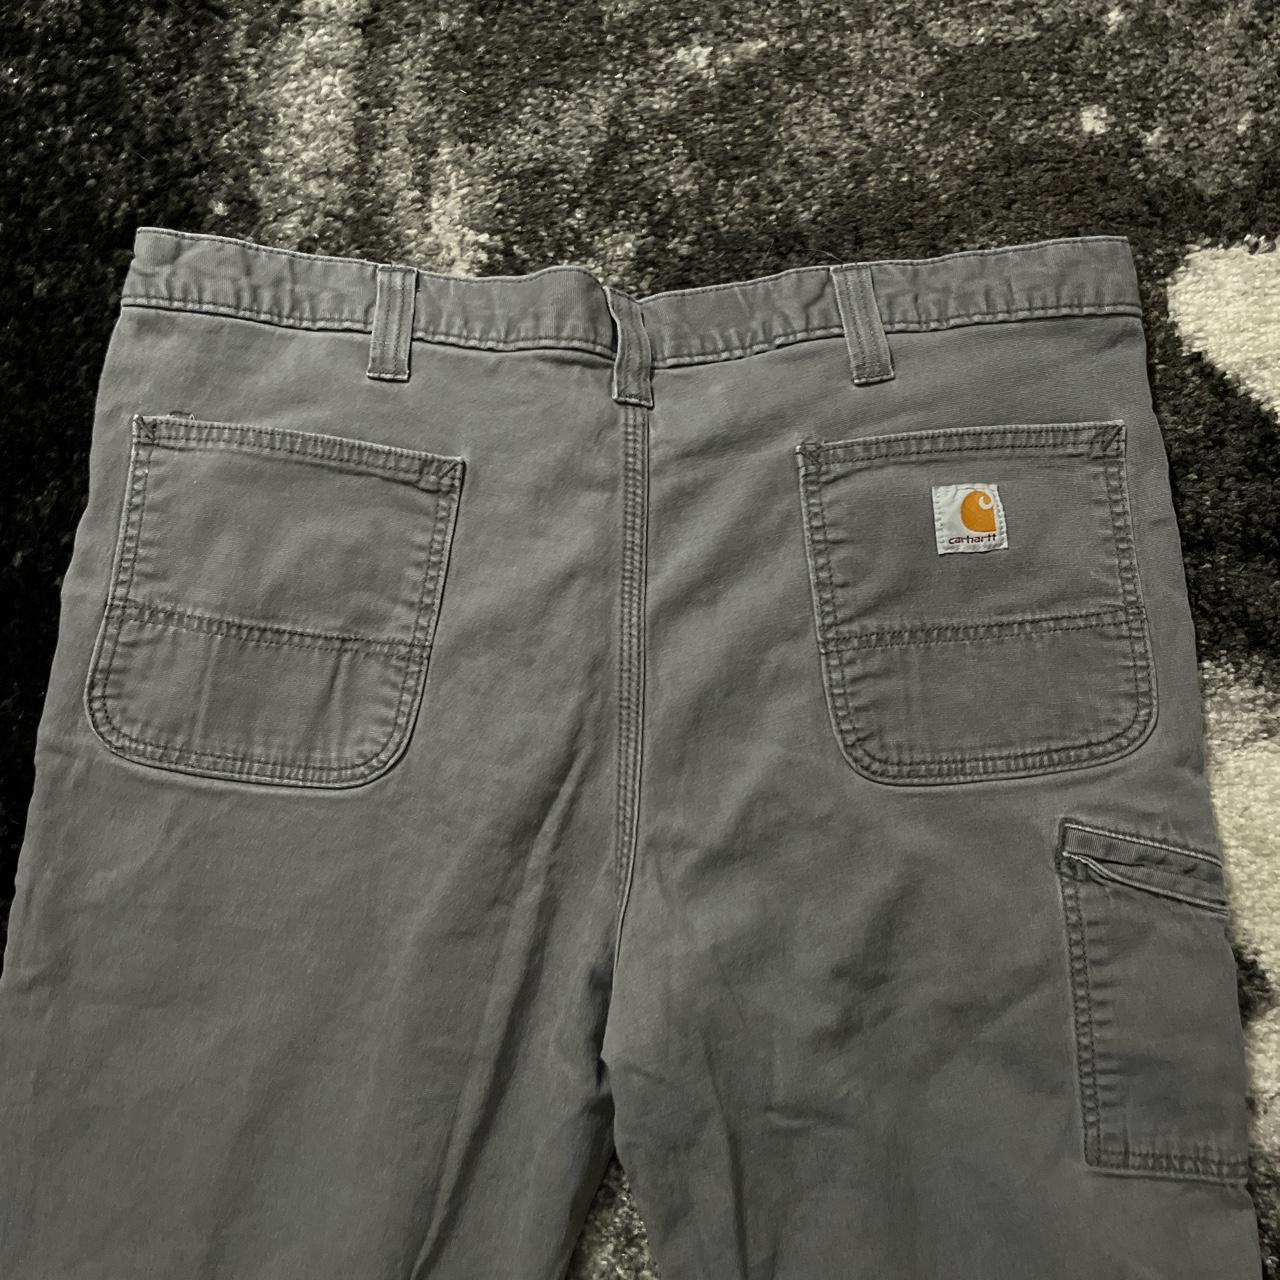 Carhartt Workwear Pants Size:... - Depop